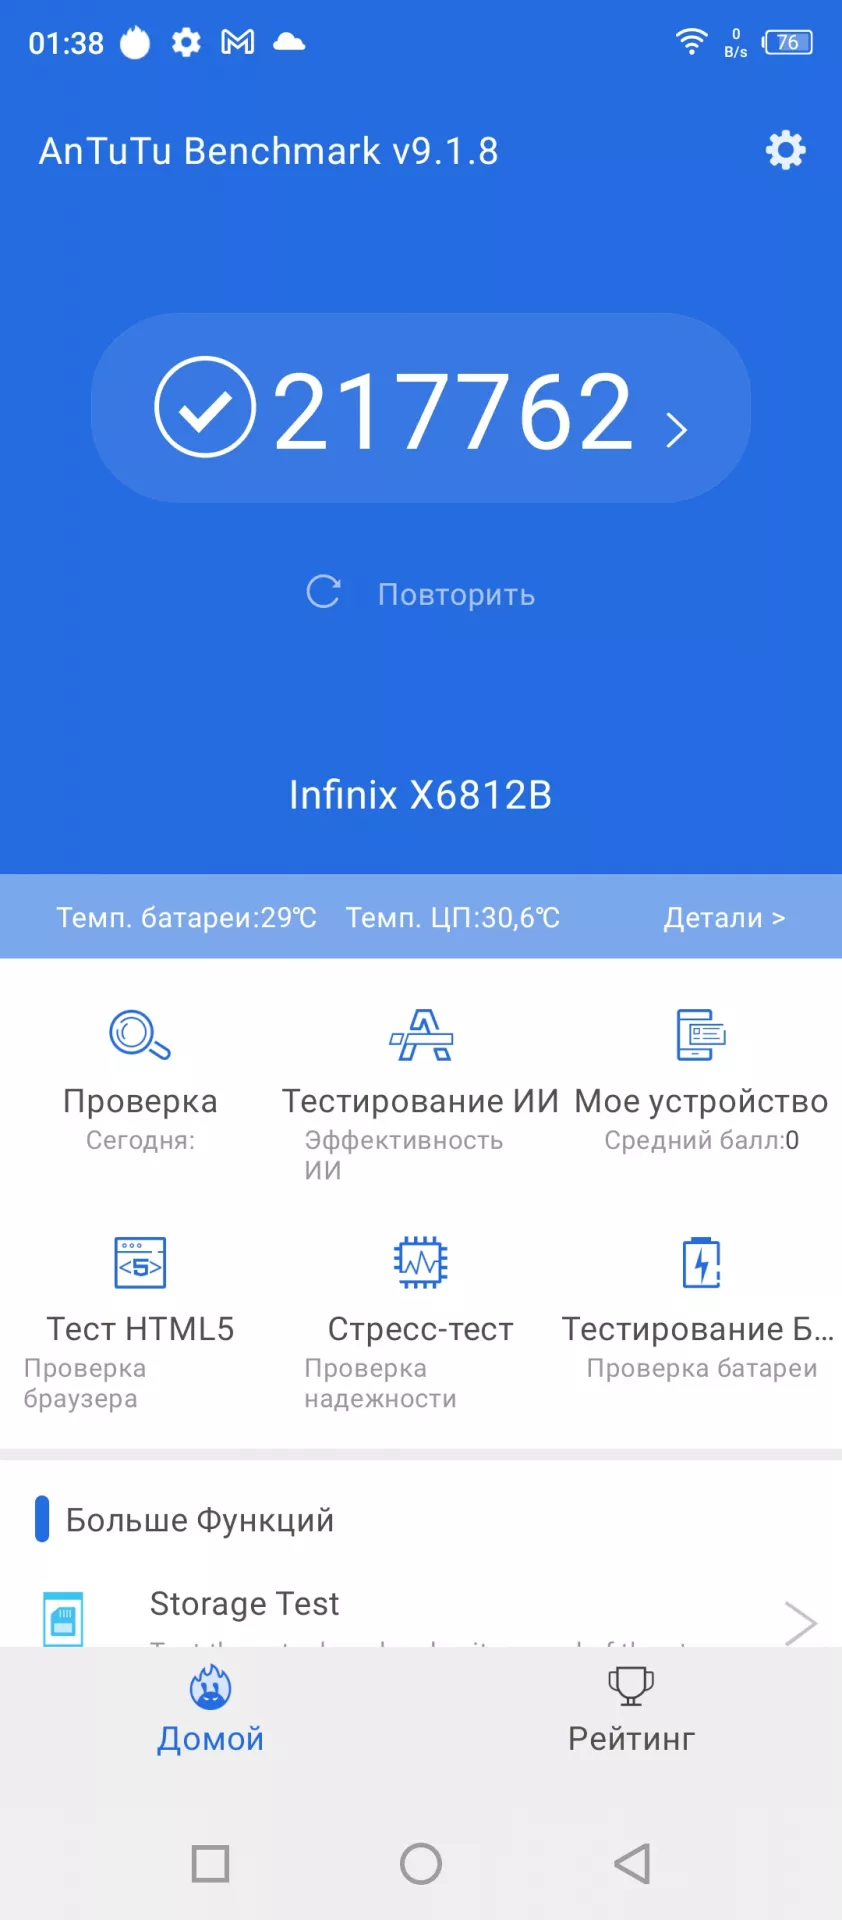 Тест-драйв смартфона Infinix HOT 11S NFC